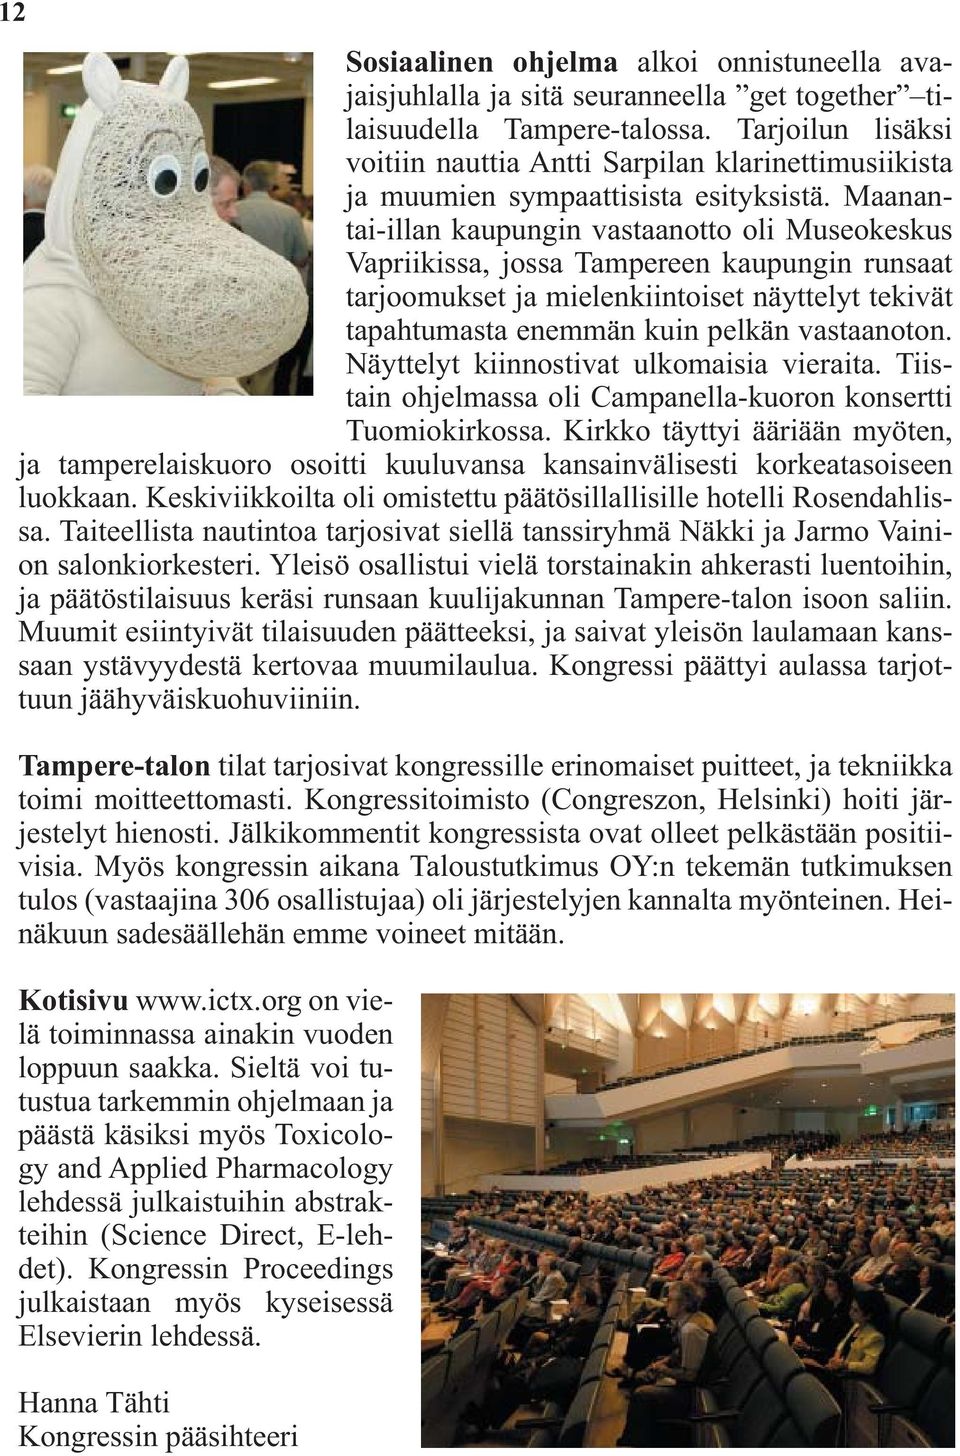 Maanantai-illan kaupungin vastaanotto oli Museokeskus Vapriikissa, jossa Tampereen kaupungin runsaat tarjoomukset ja mielenkiintoiset näyttelyt tekivät tapahtumasta enemmän kuin pelkän vastaanoton.